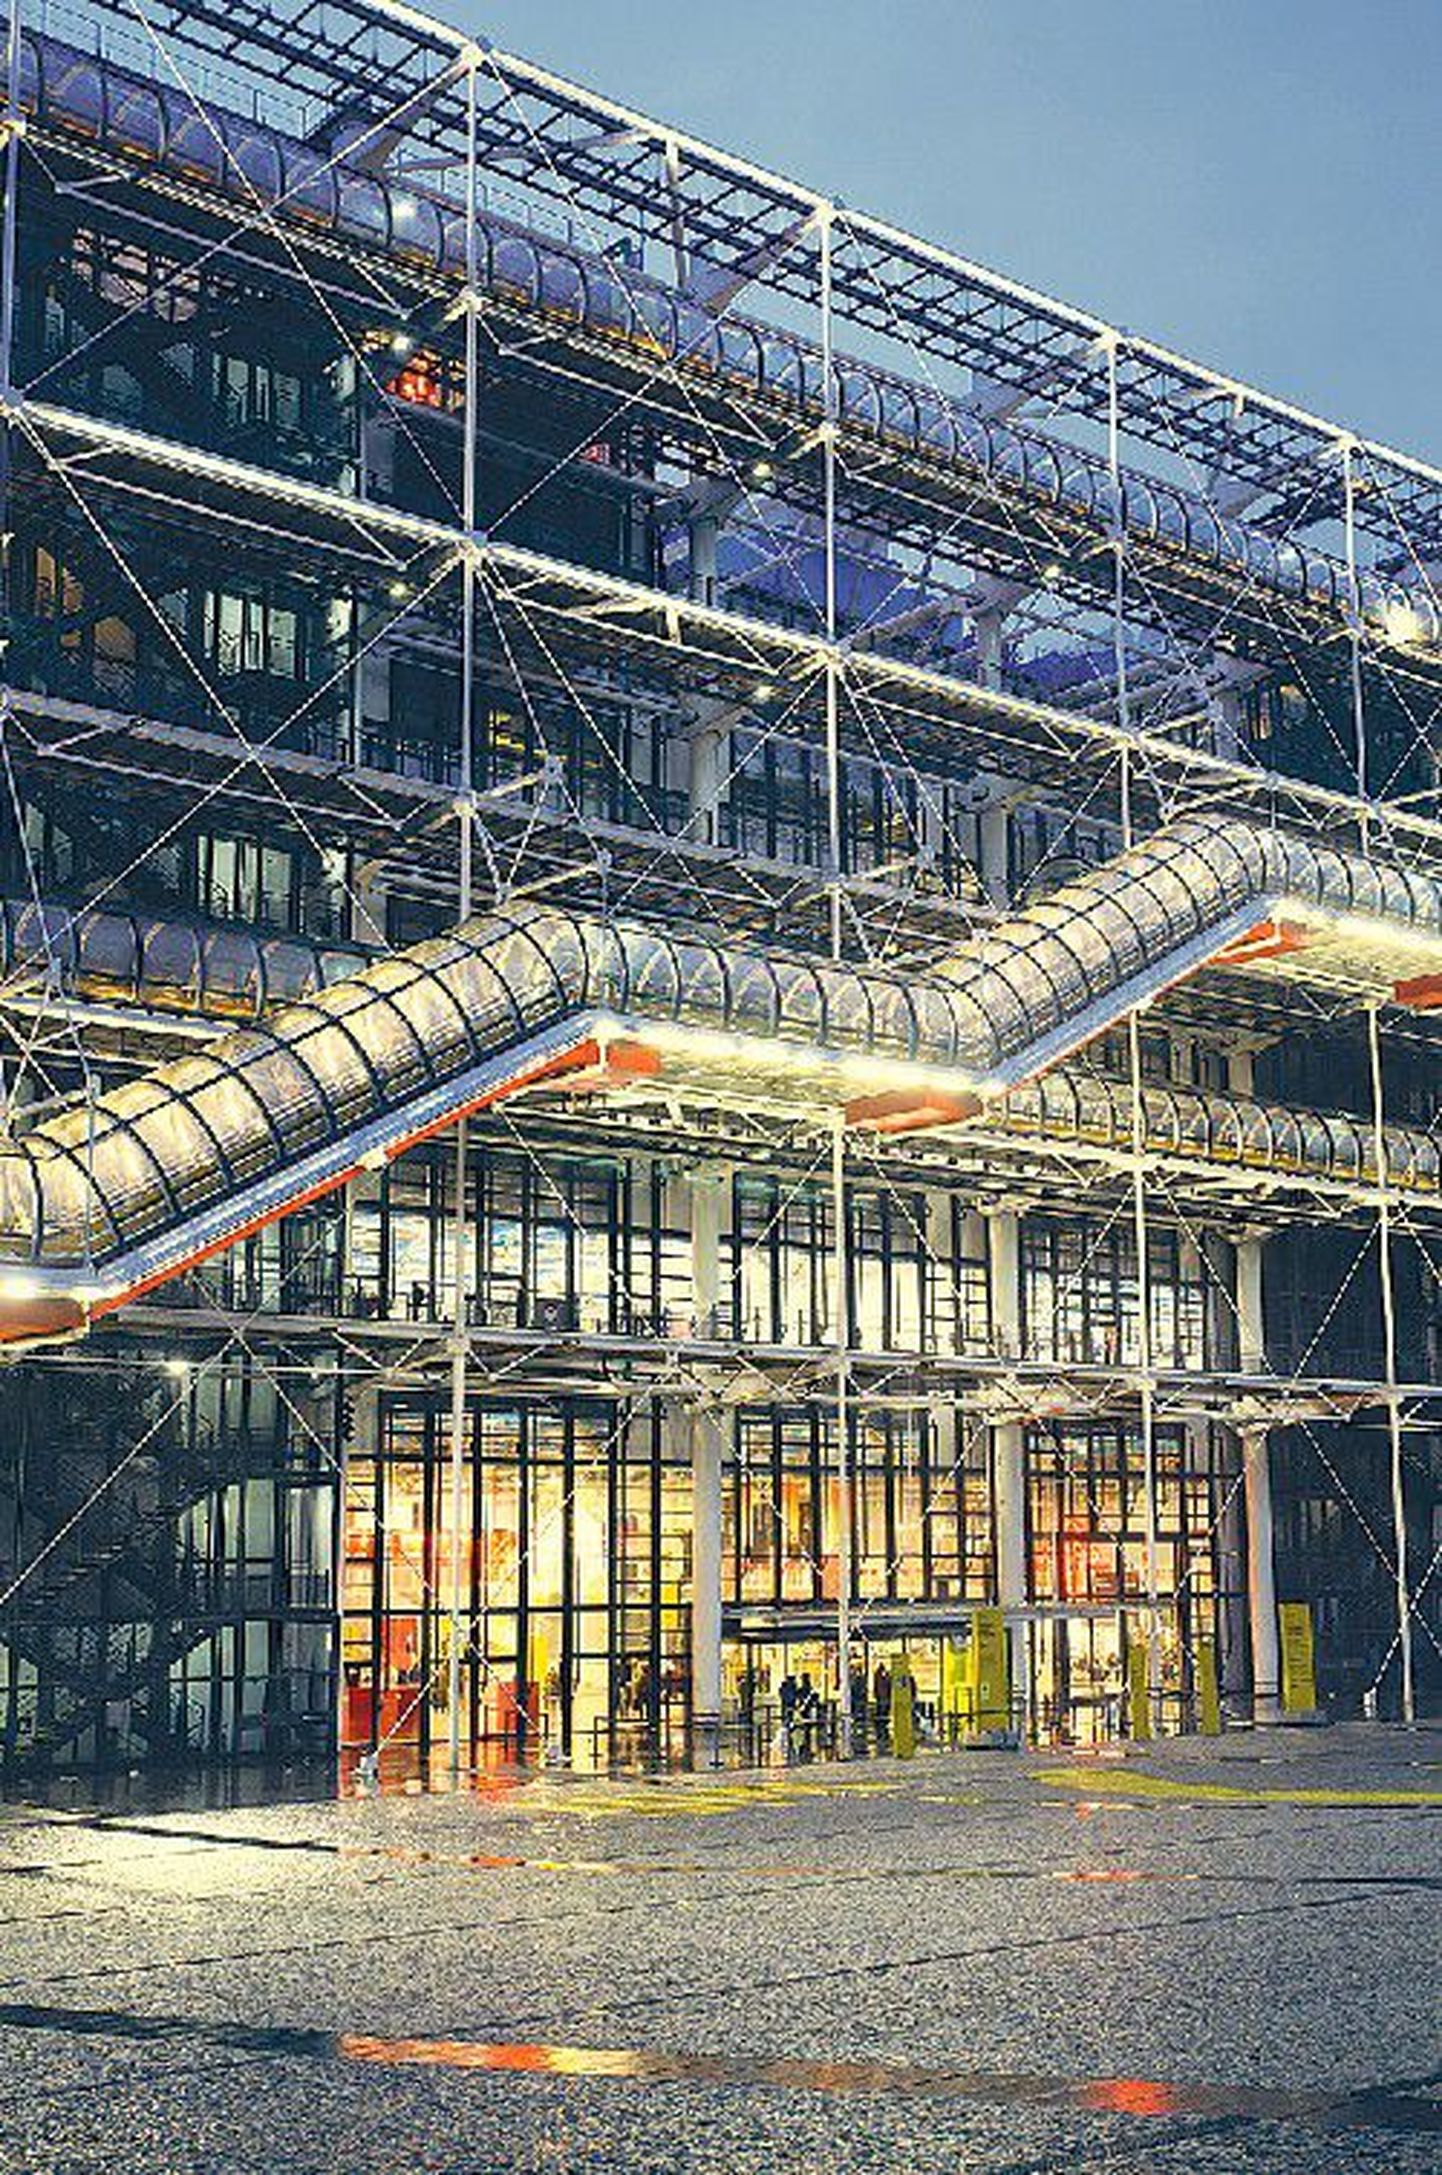 Näide teisiti nägemisest: pariislasi jahmatanud projekt, Georges Pompidou nimeline moodsa kunsti muuseum, mis oma torude rägastikuga on praegu üks suurimaid vaatamisväärsusi.